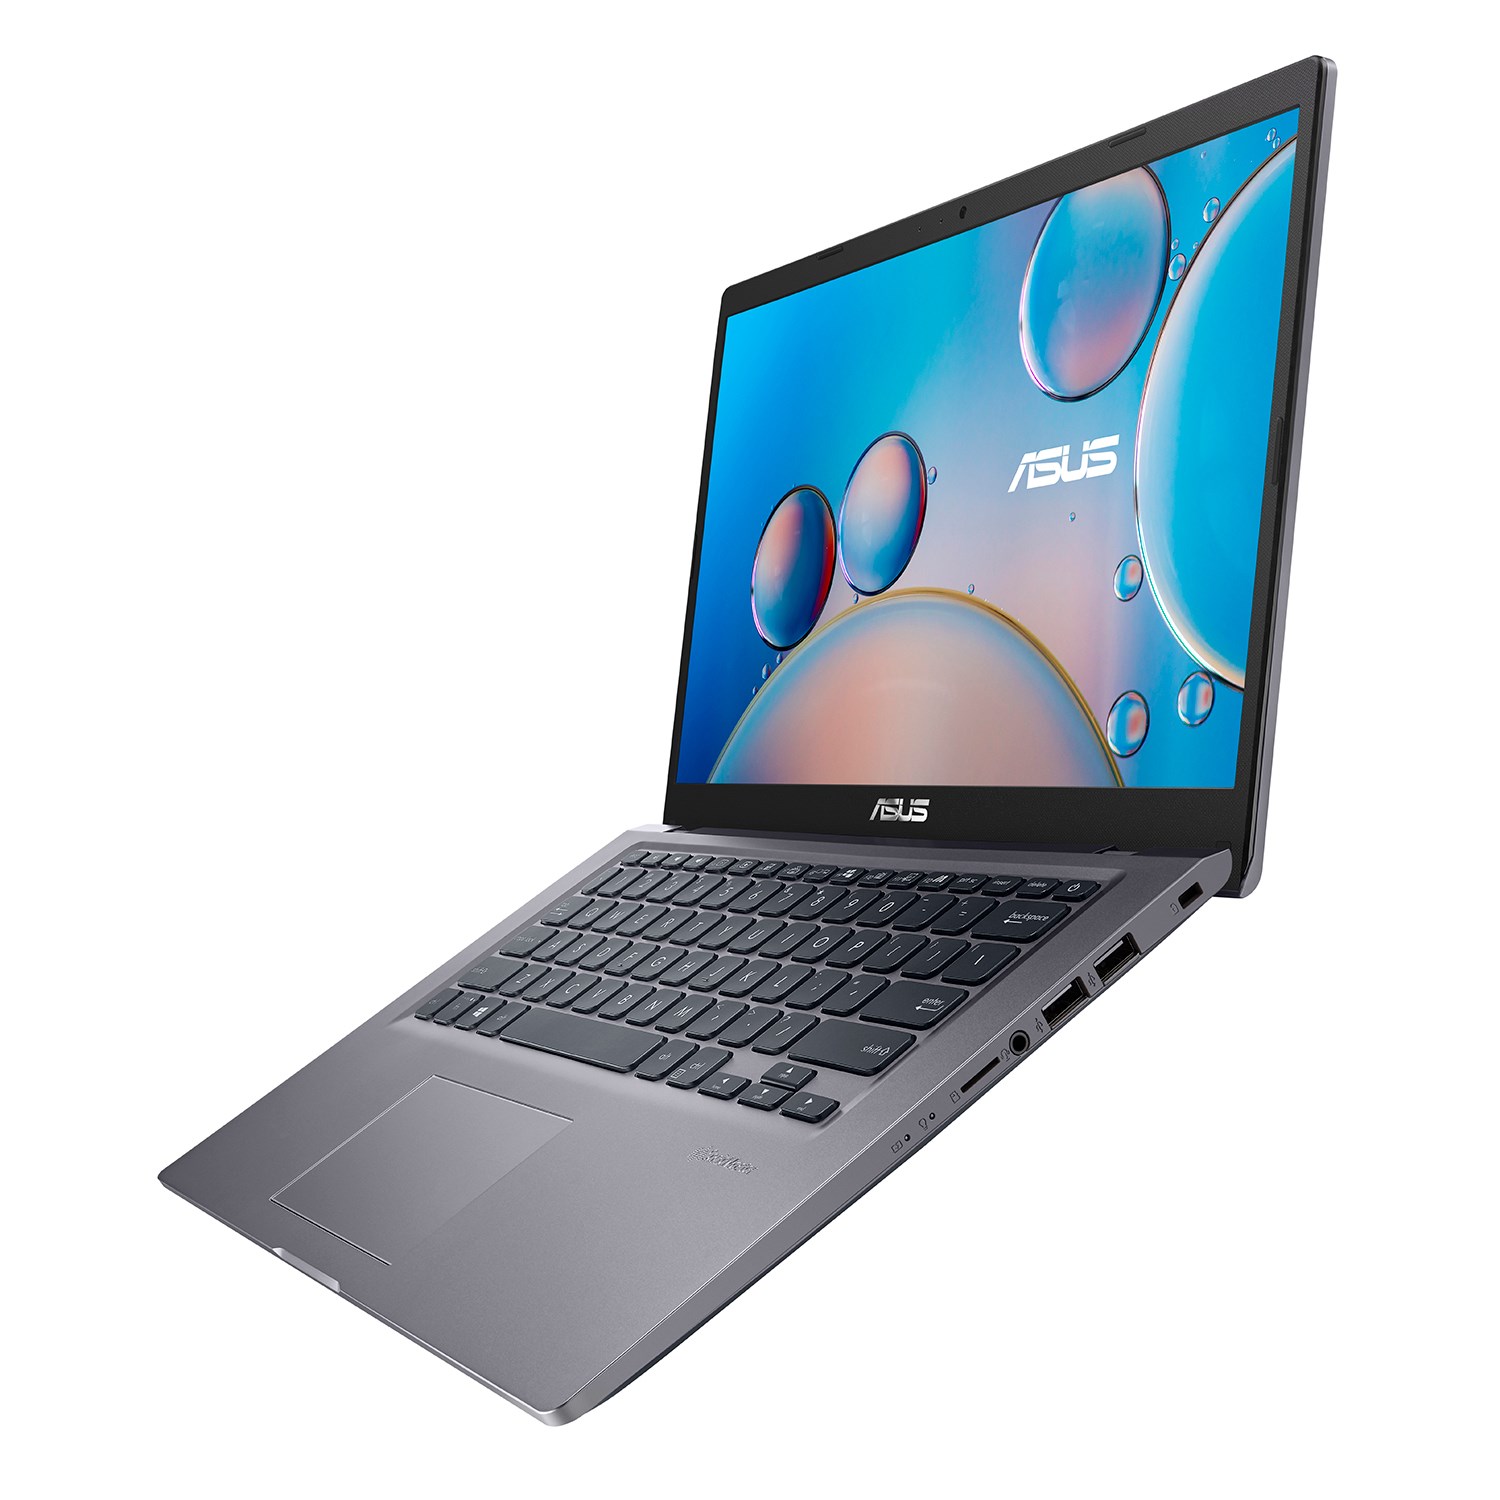 Laptop Asus Vivobook X415ma Ek060t Slate Grey Celeron N4020 4gb